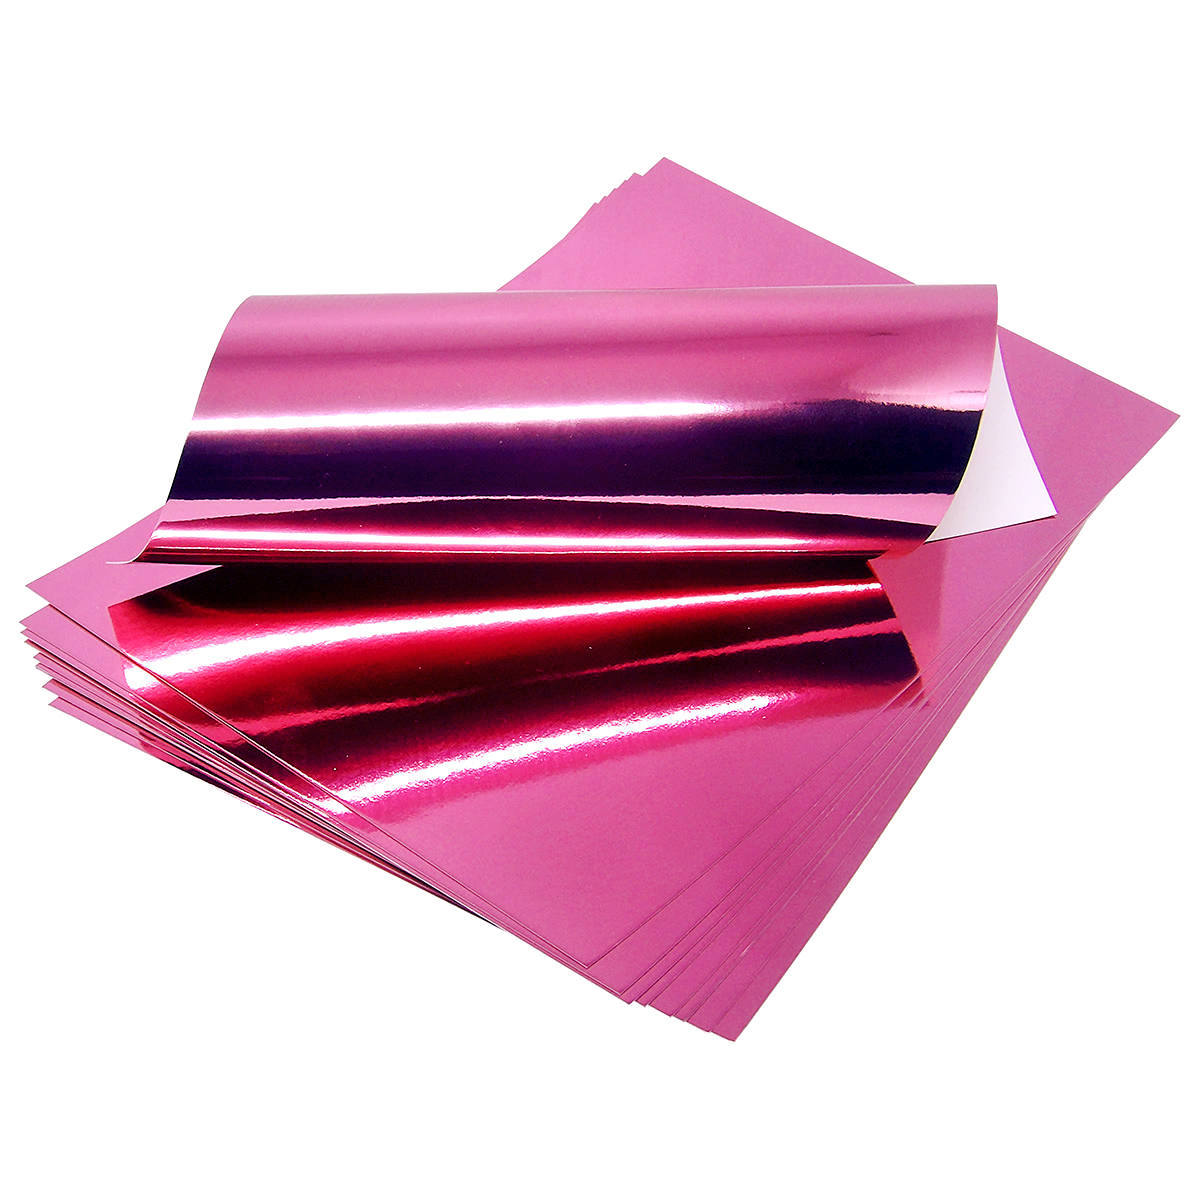 Papel Laminado Rosa A4 250g Lamicote para Artesanato Decorações Enfeites Lembrancinhas Pacote com 10 Folhas Masterprint